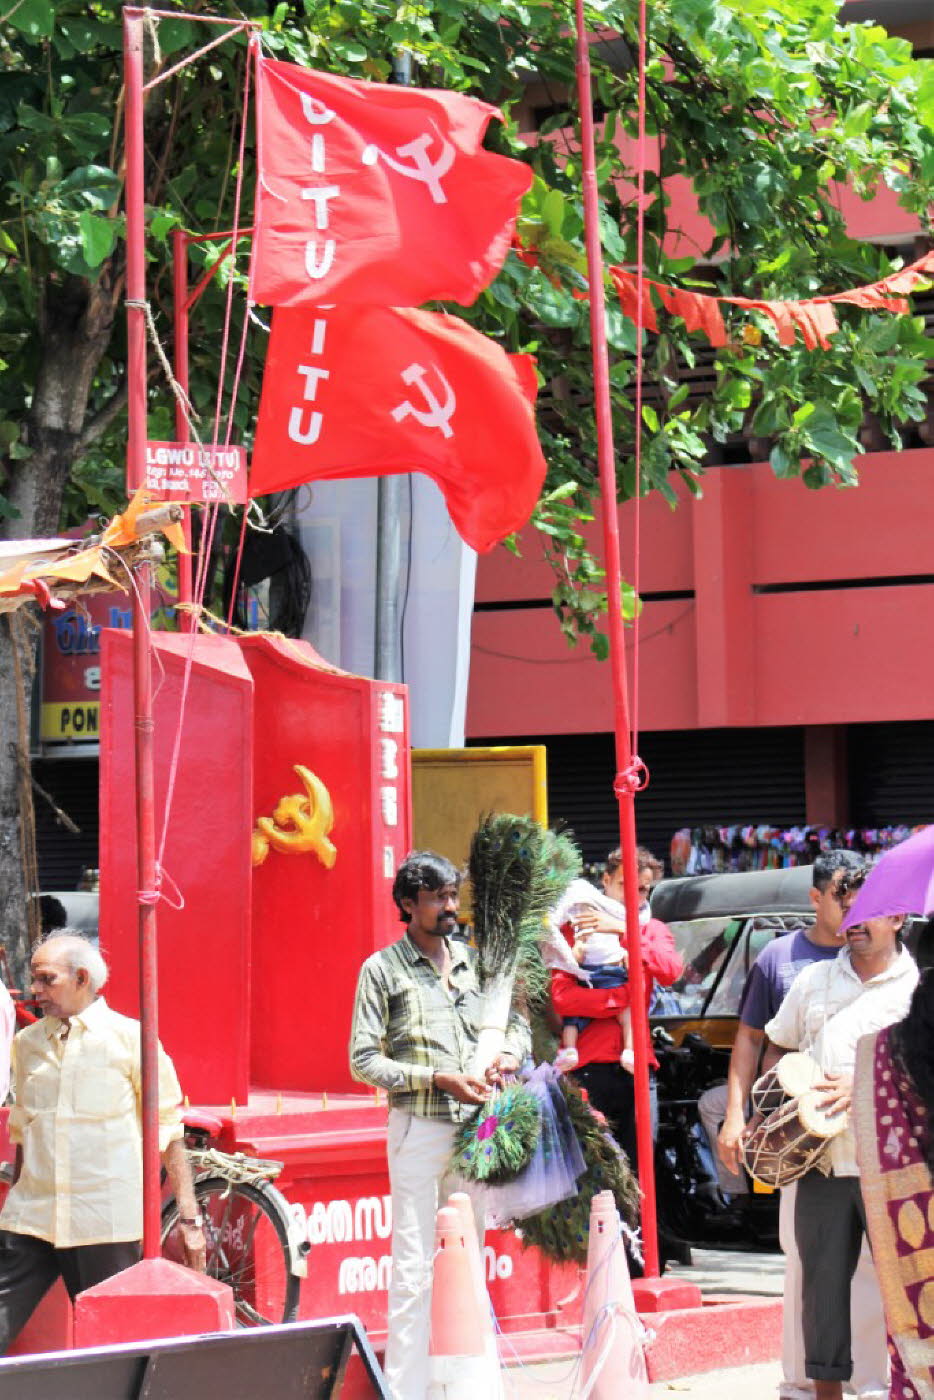 Kerala und der Kommunismus: Seit Ende der Siebziger Jahre ist das politische Leben in Kerala geprägt von zwei Koalitionen aus dem linken Spektrum der Parteienlandschaft, die sich die Macht im Wechsel teilen. Die Left Democratic Front (LDF) ist vornehmlich